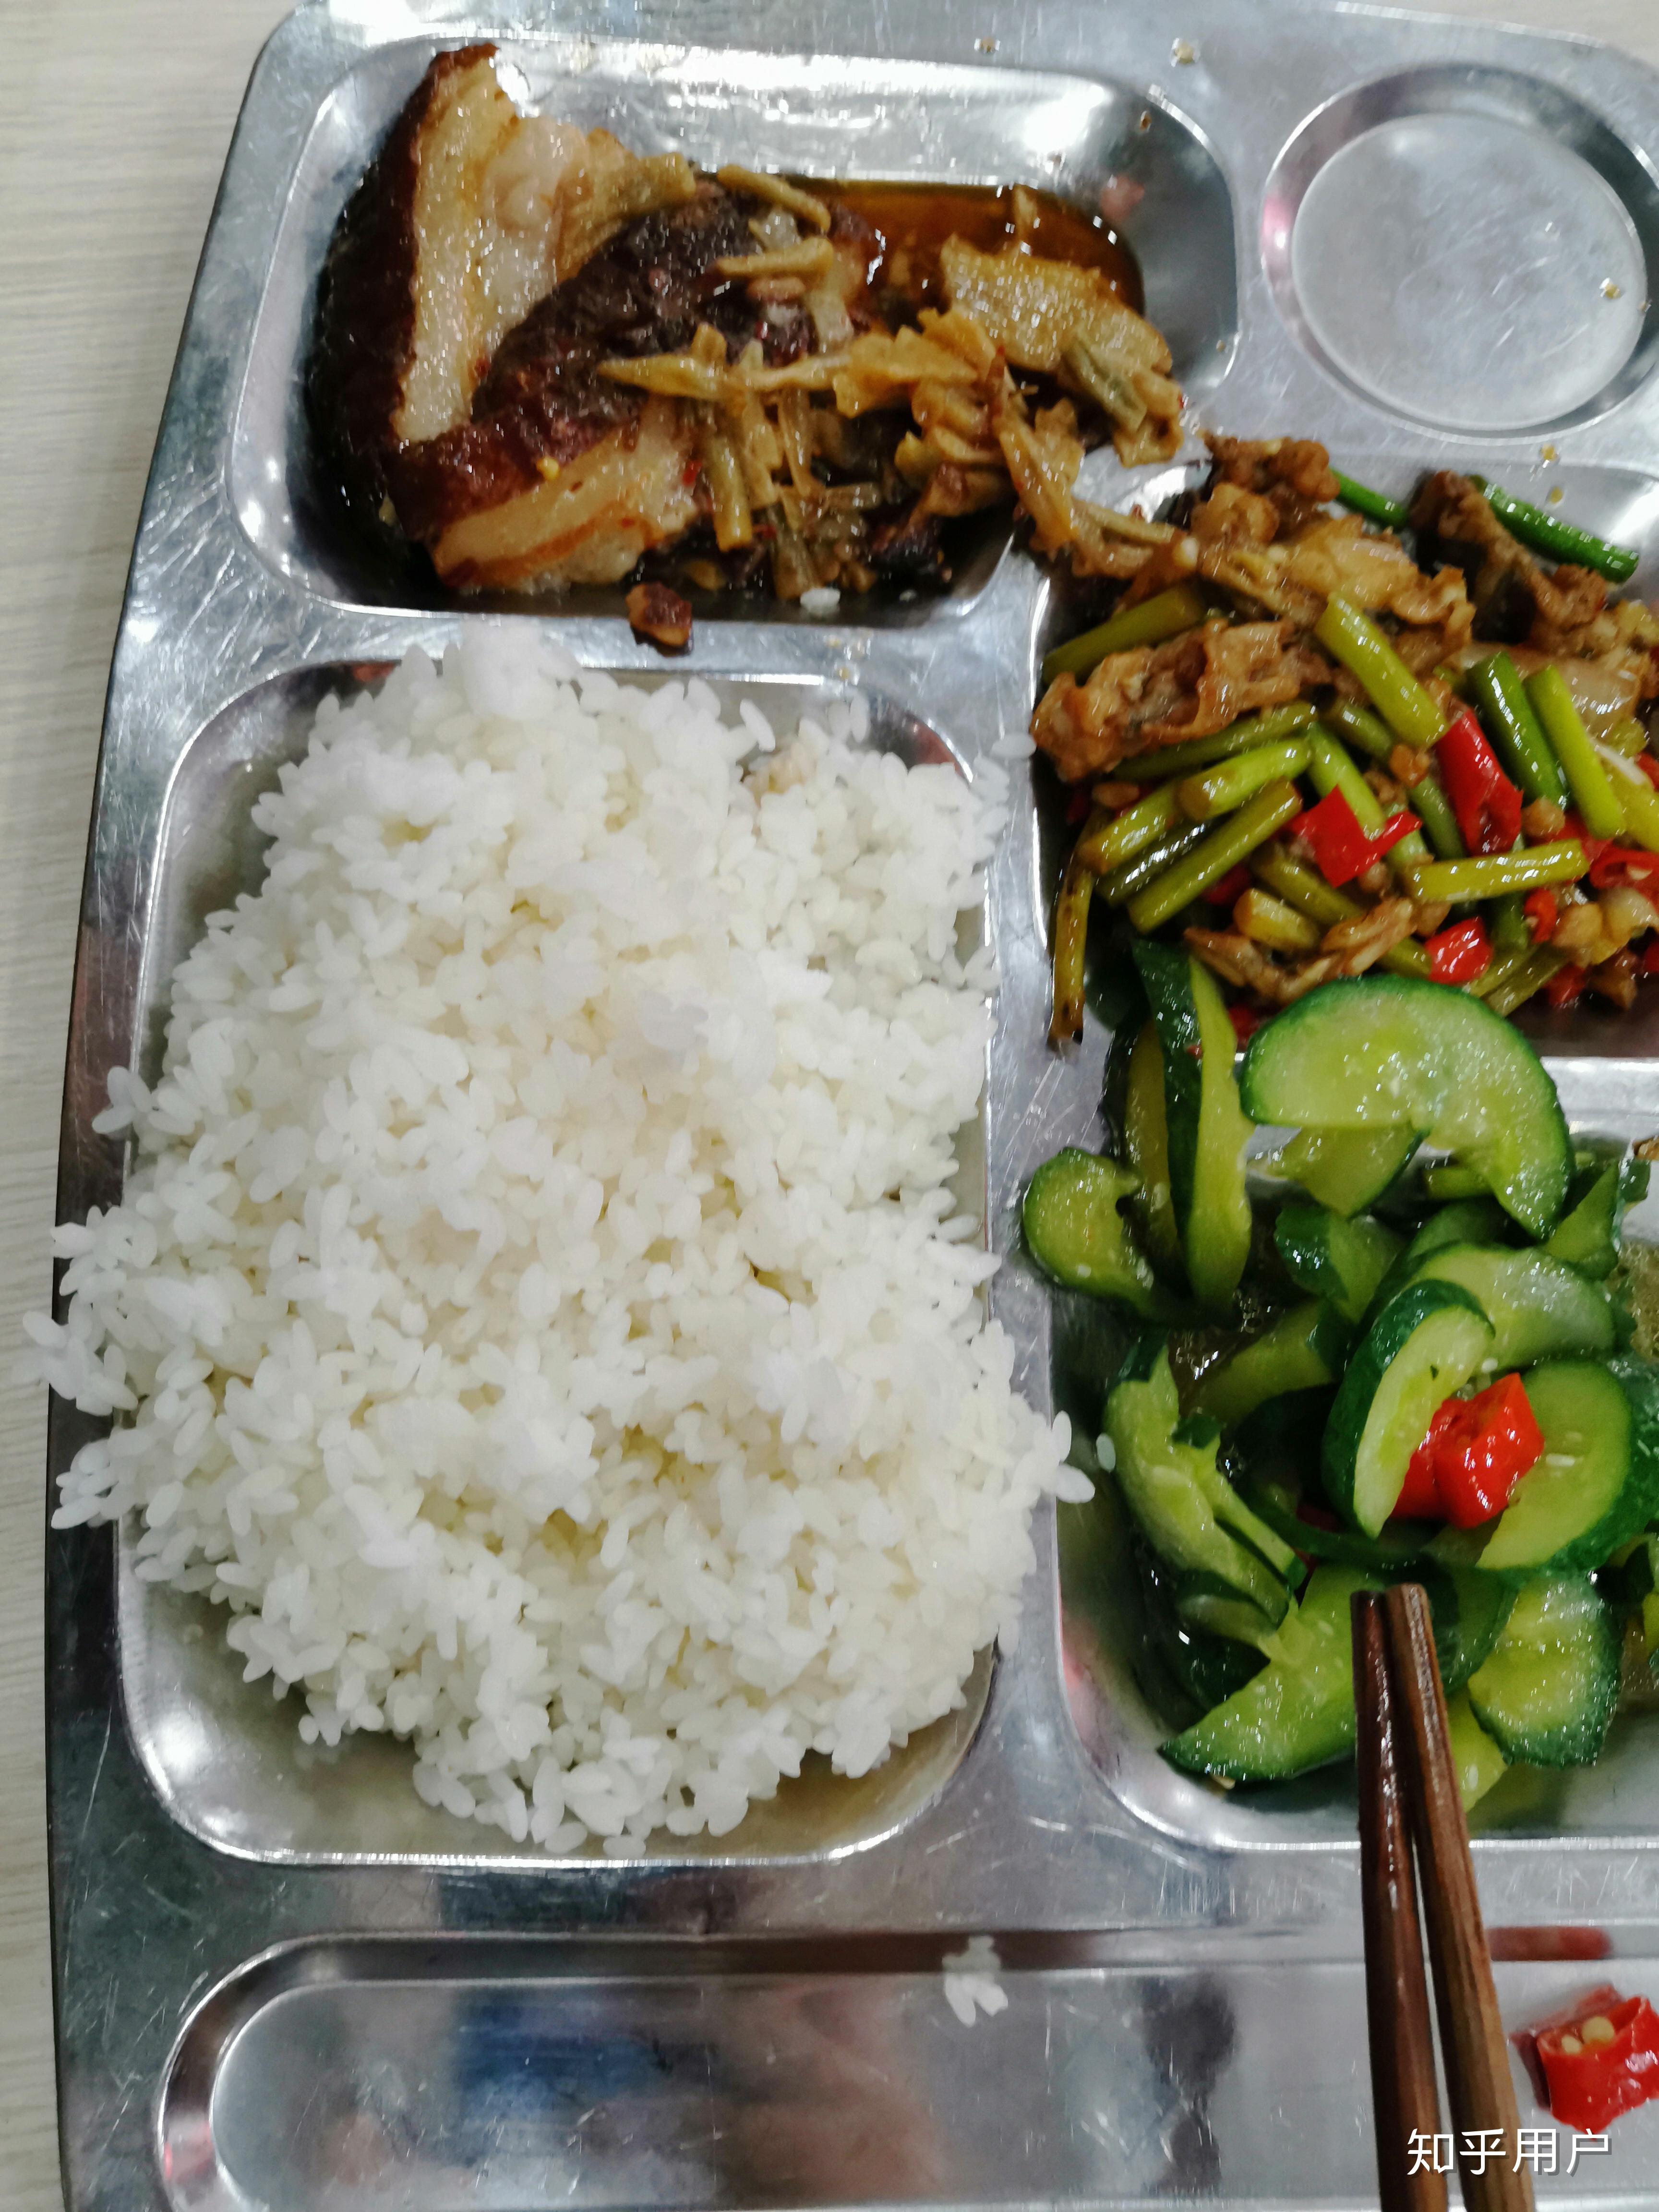 陕西国防学院食堂图片